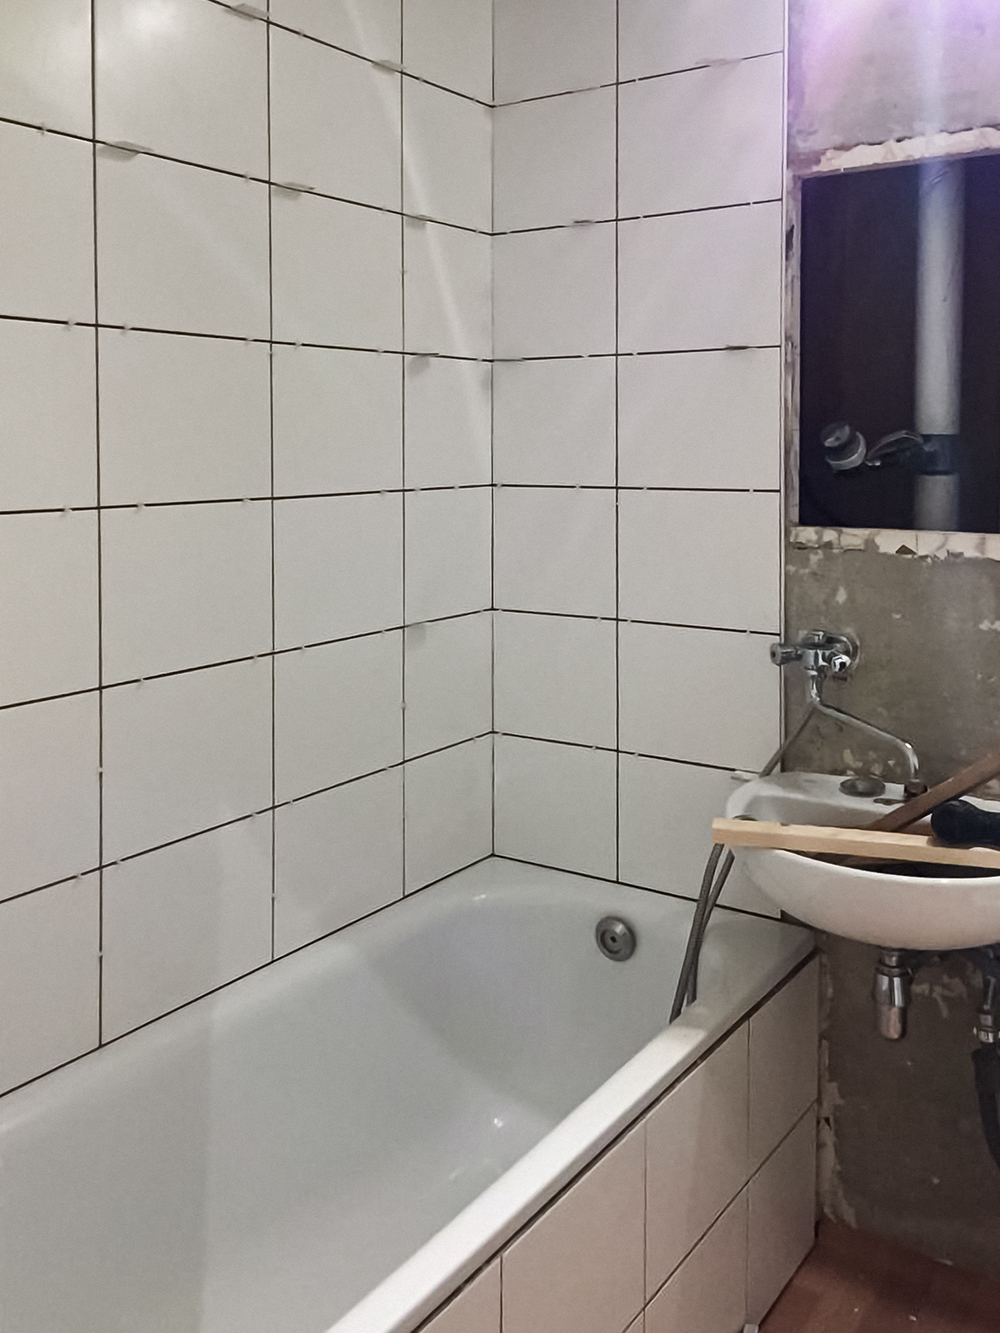 Когда обои заменили на простую белую плитку, в ванной стало гораздо светлее и просторнее